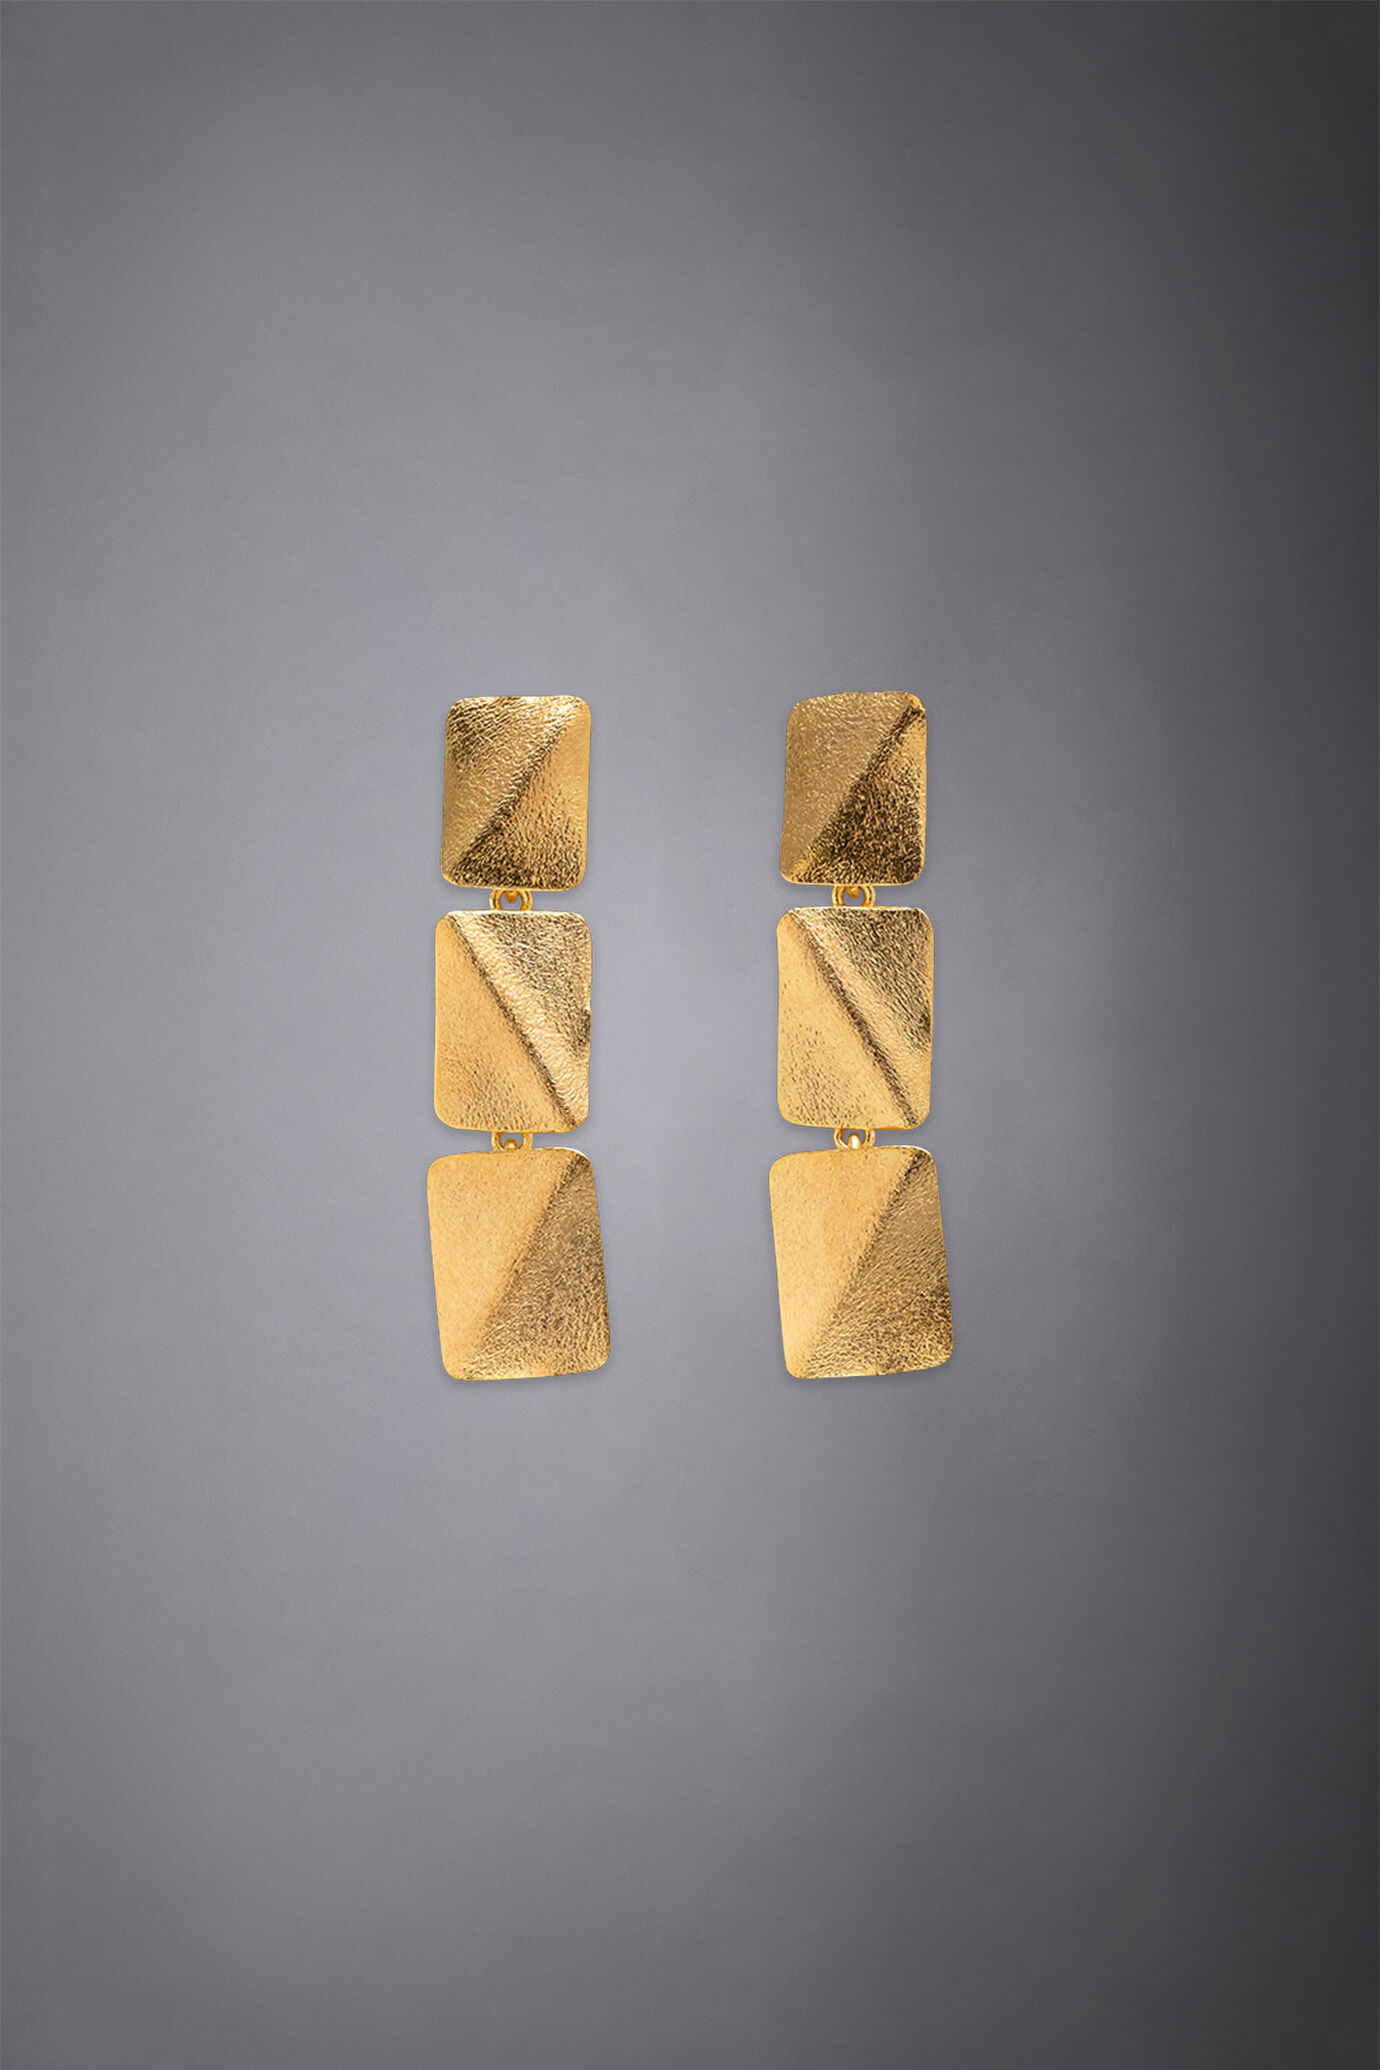 Women's earrings made of brass